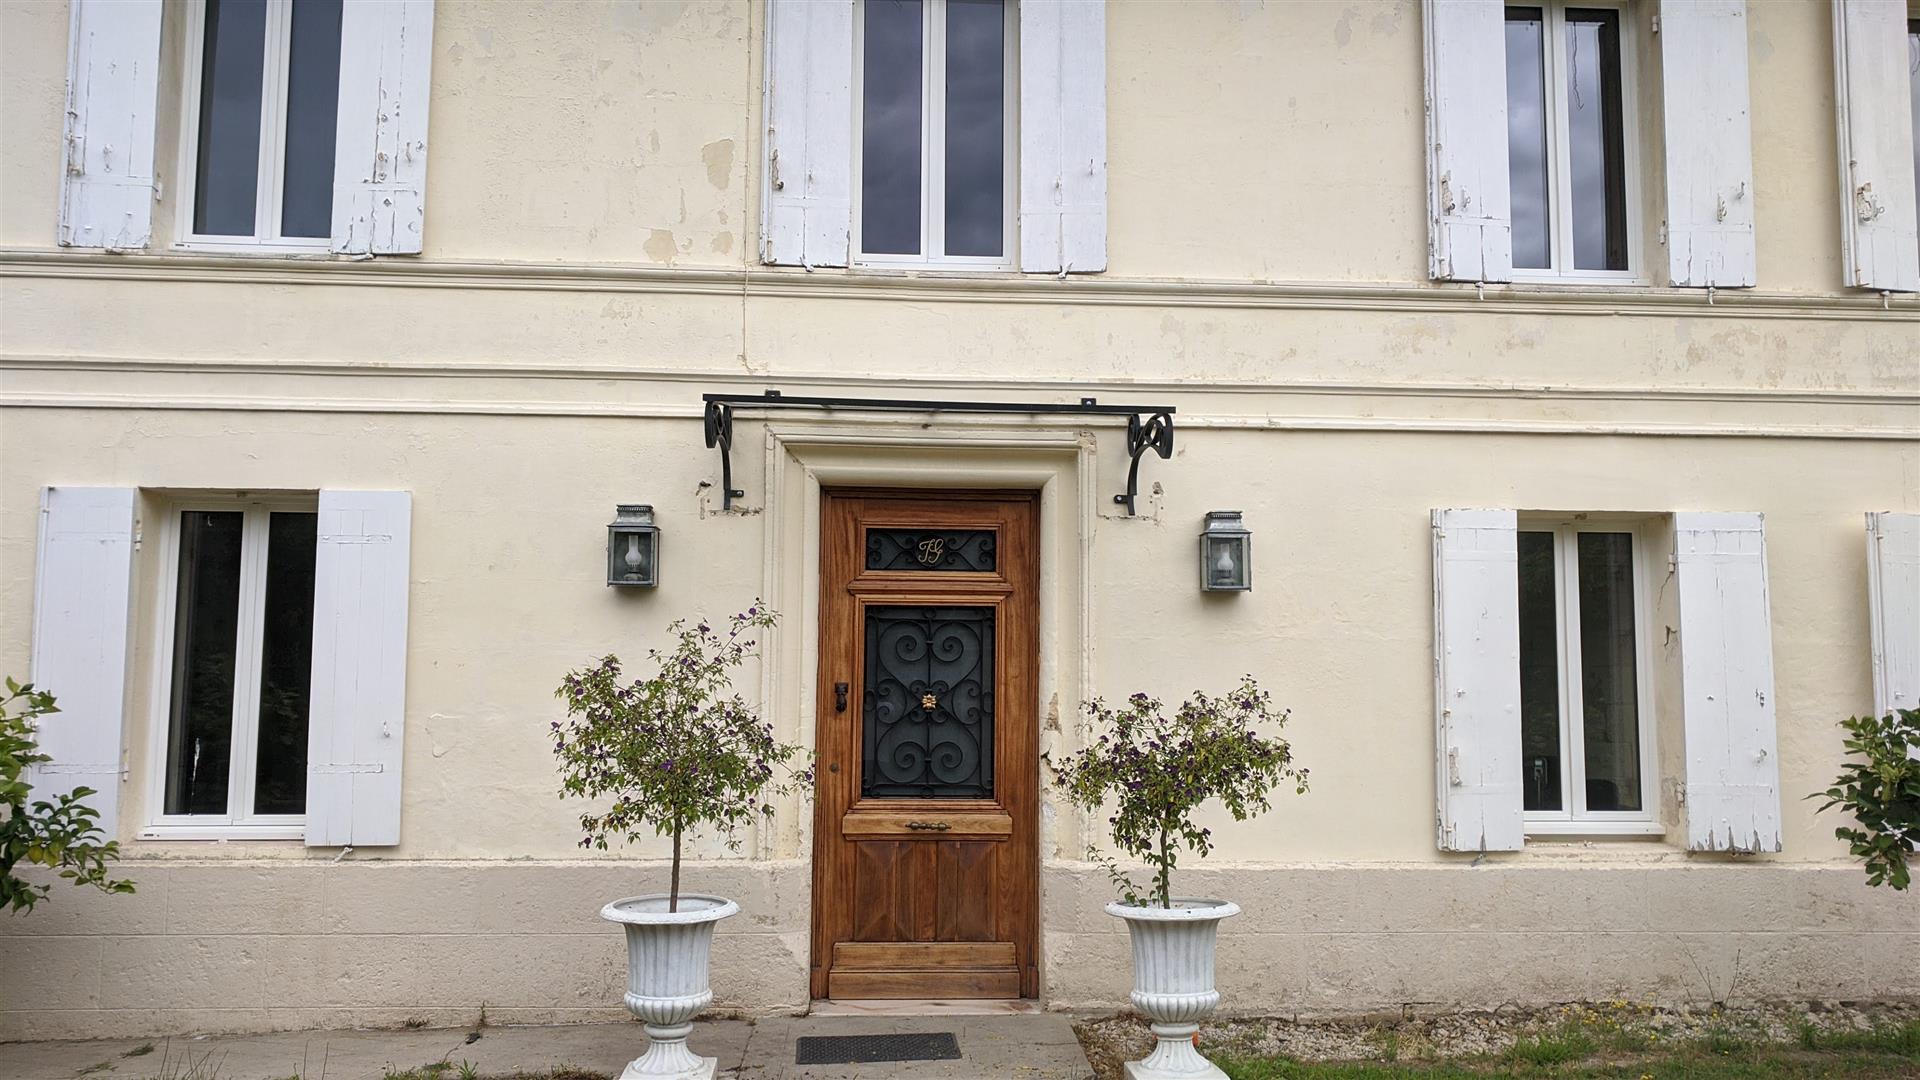 Vzácna príležitosť kúpiť veľký vidiecky kamenný dom v Saint-Andre-de-Cubzac, 20 km ďaleko